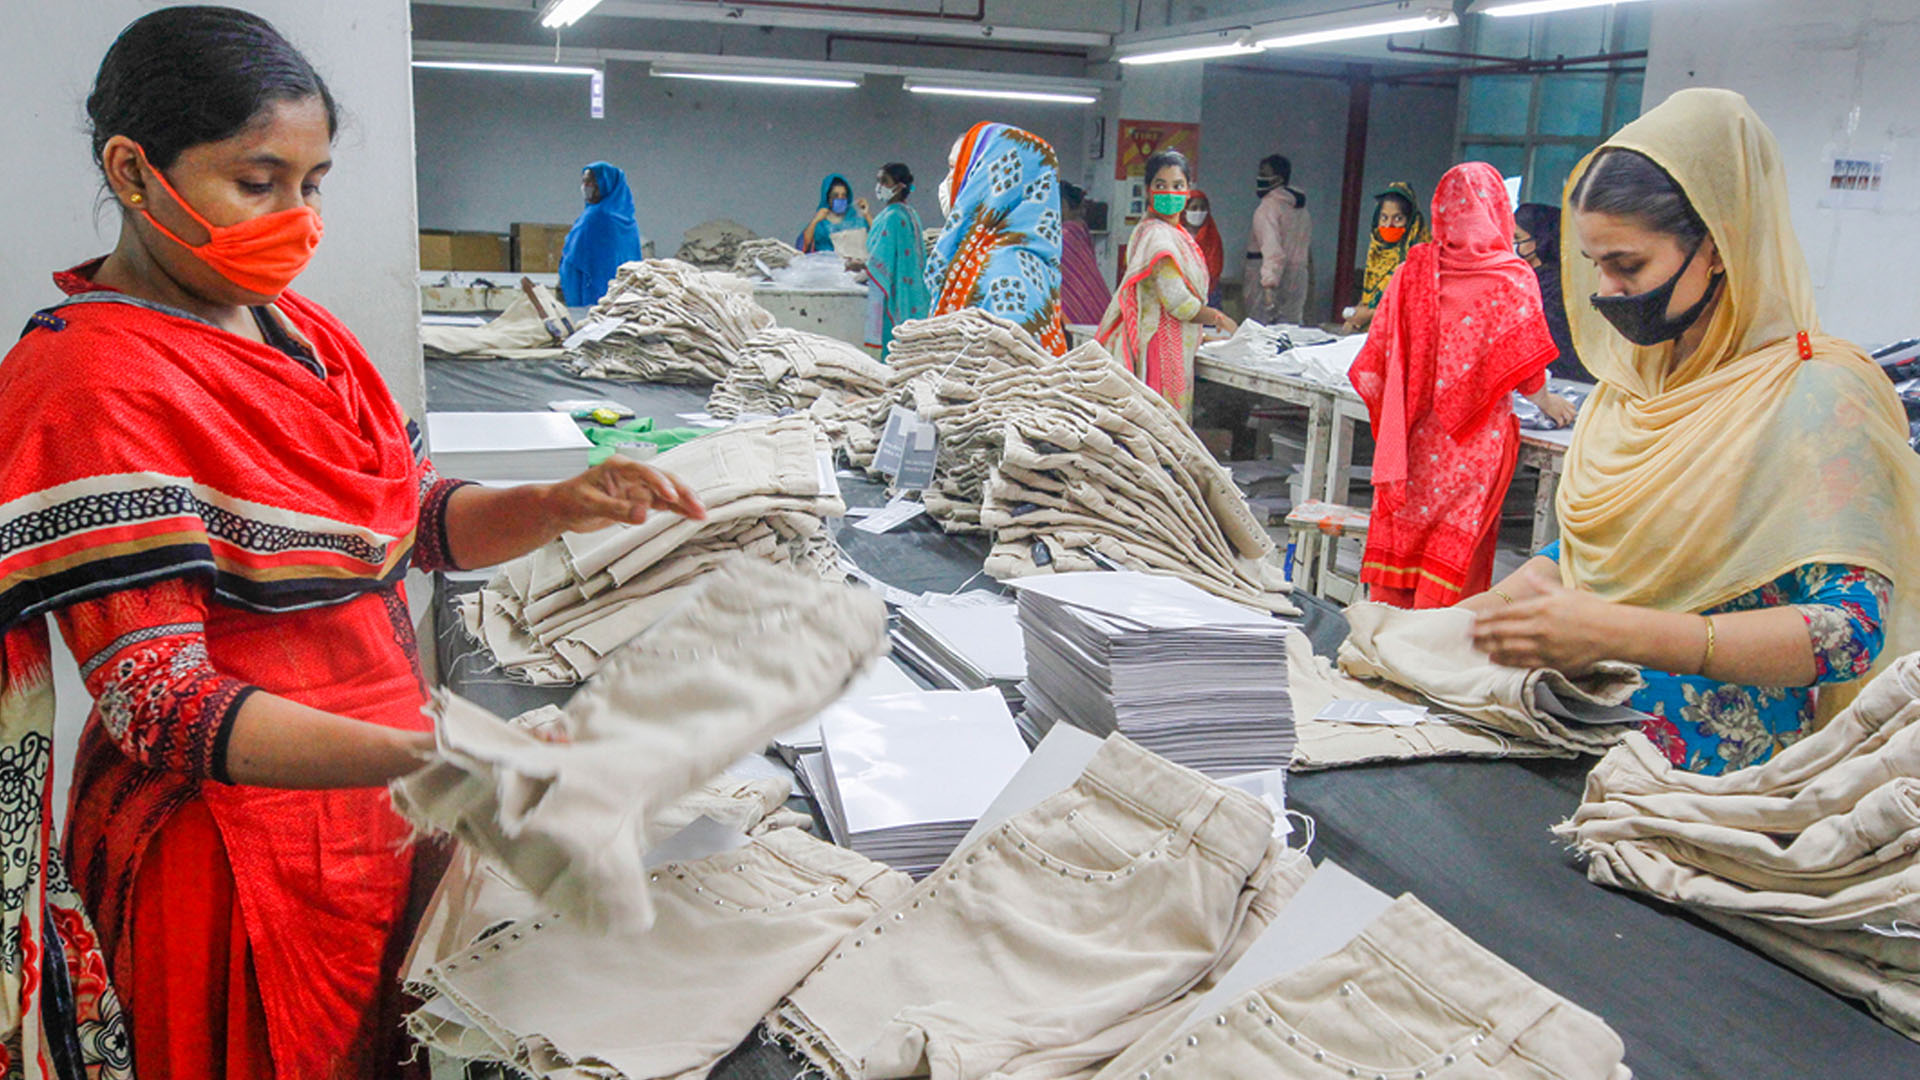 Frauen arbeiten in einer Bekleidungsfabrik in Dhaka